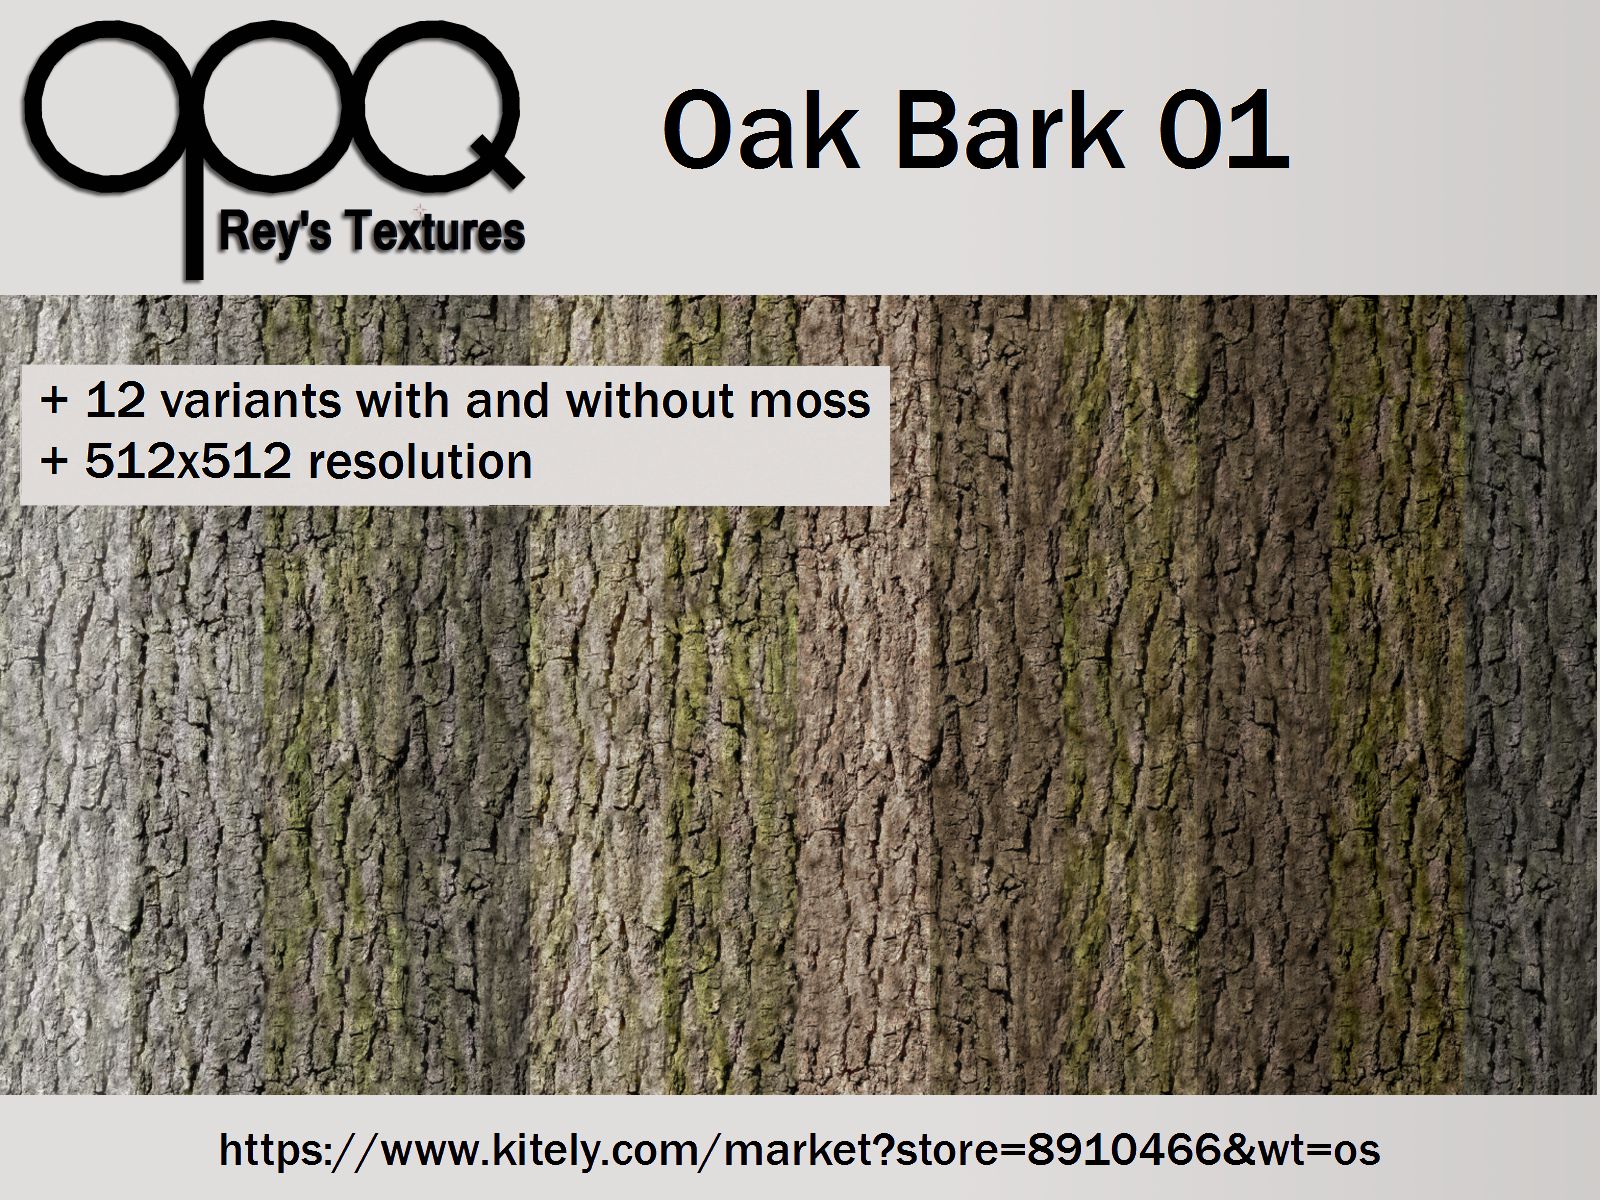 Rey's Oak Bark 01 Poster Kitely.jpg